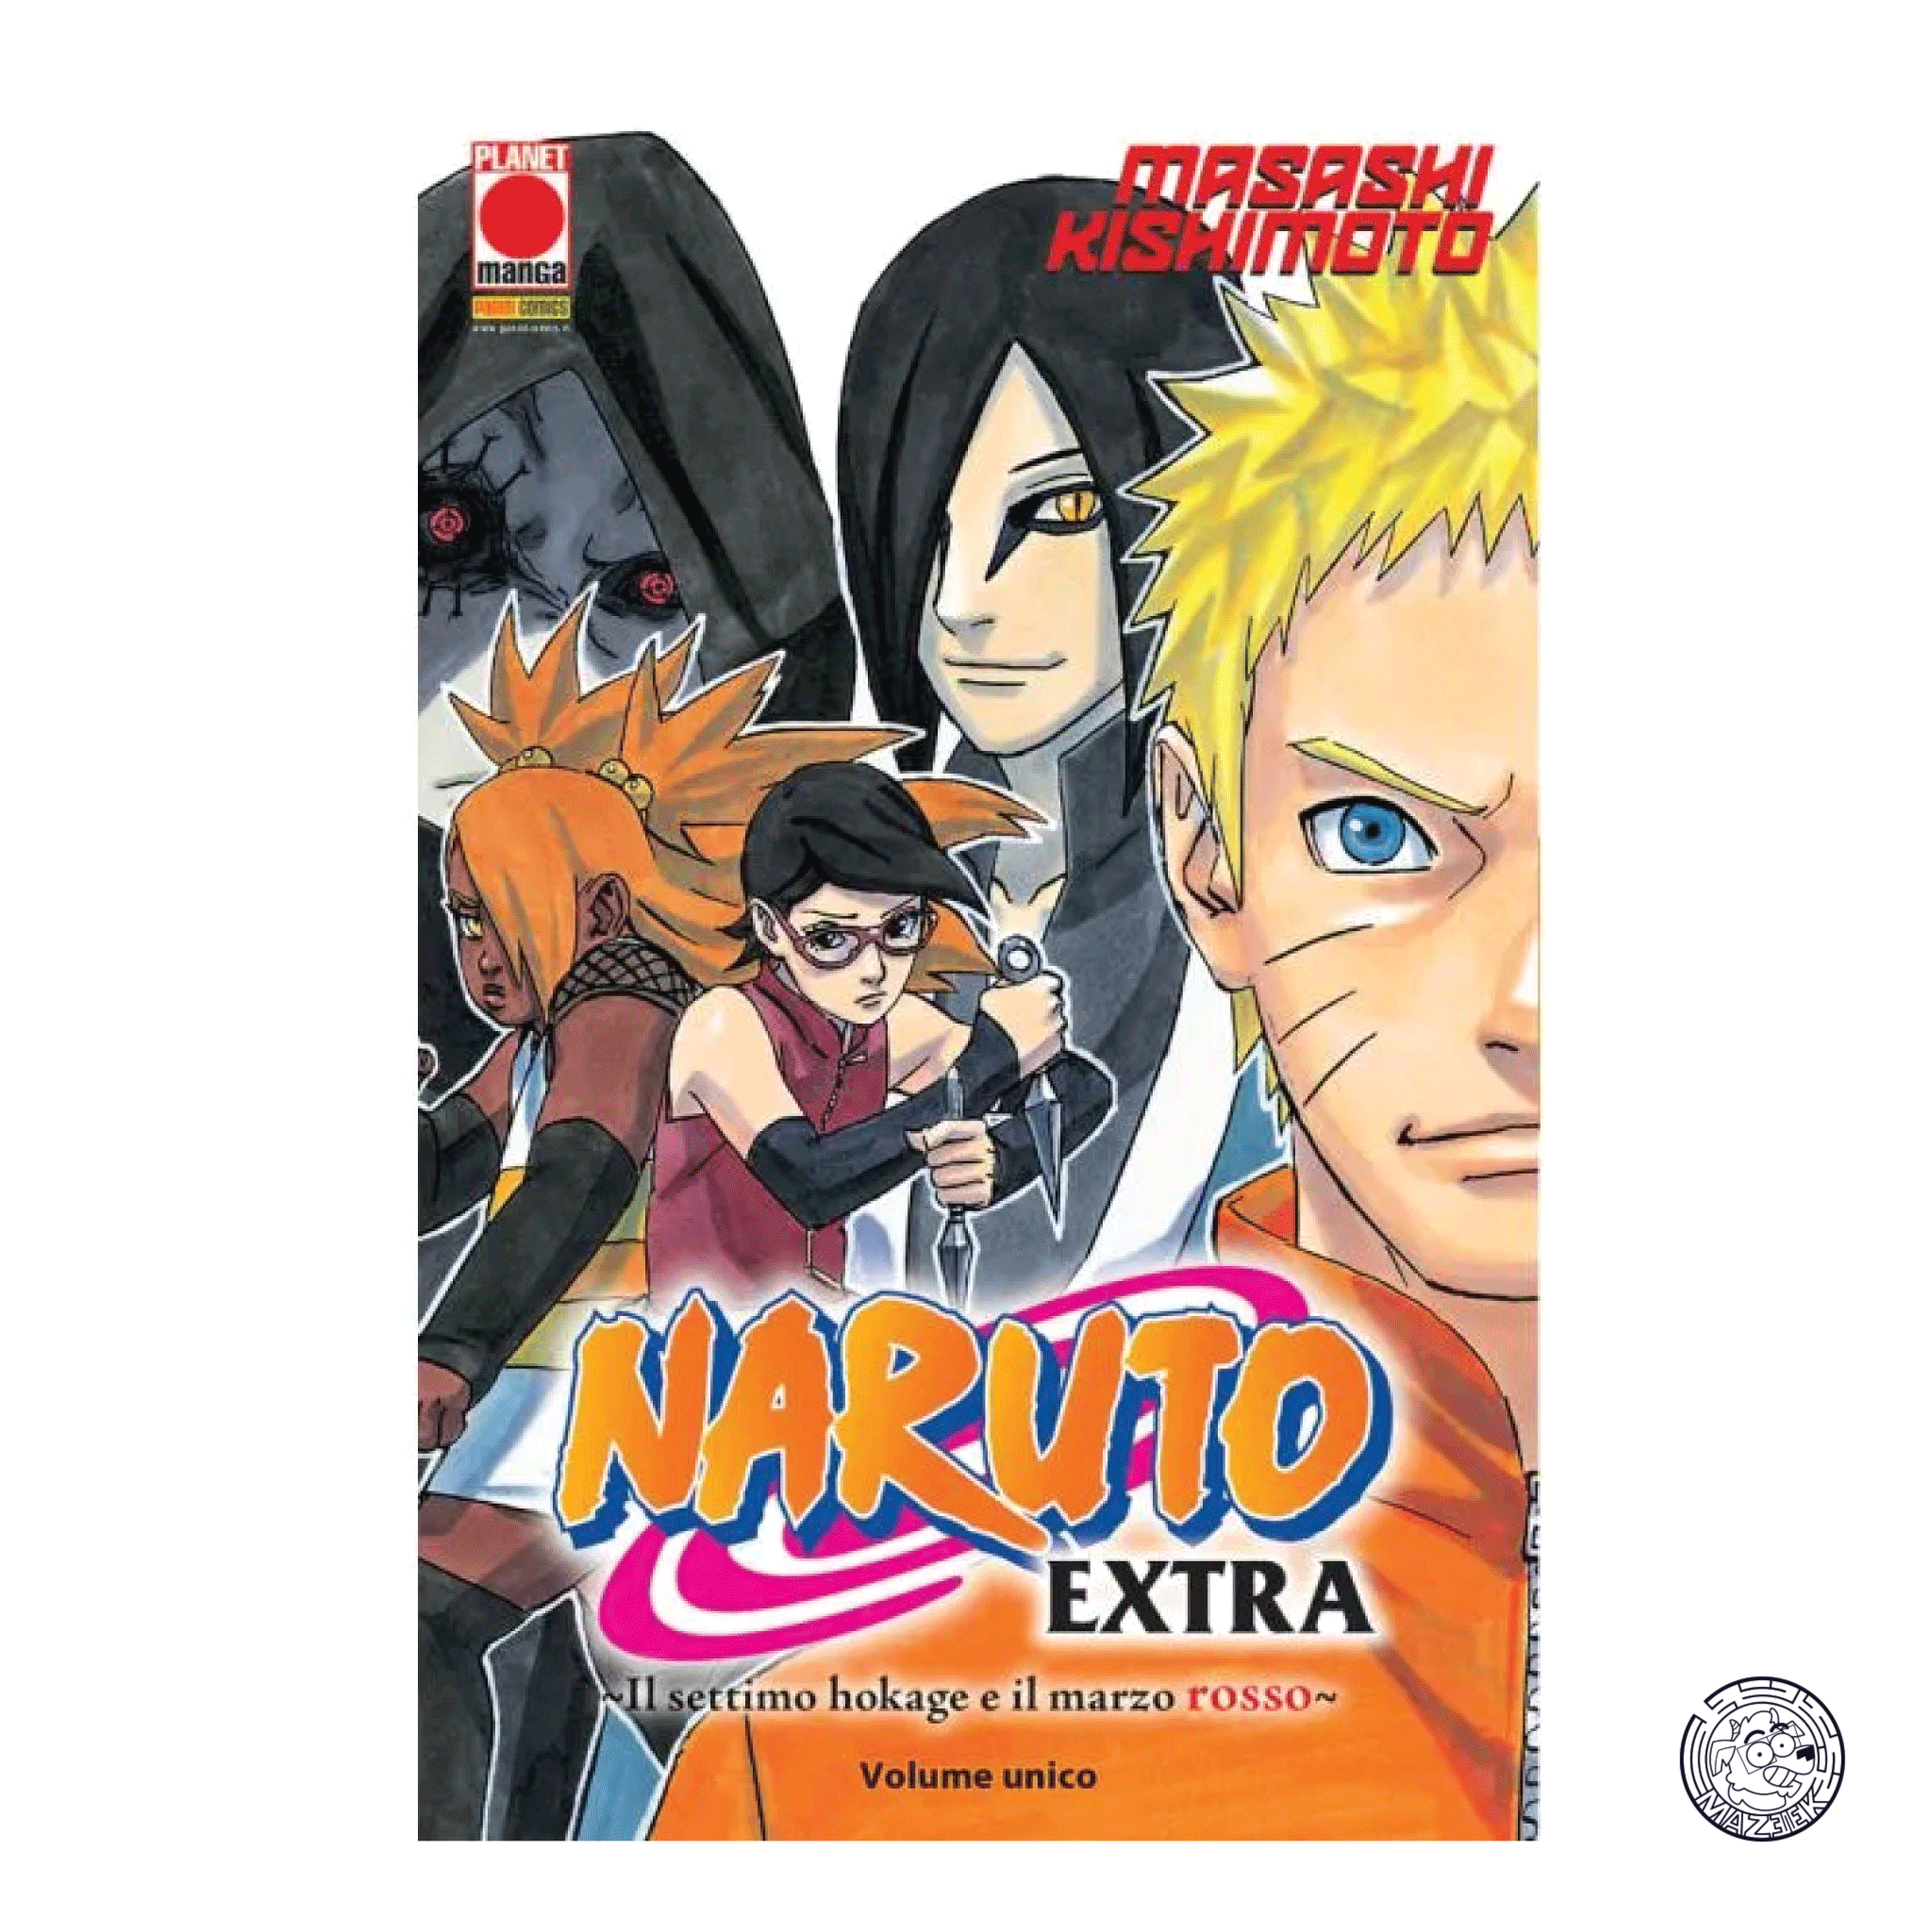 Naruto The Myth 49 – Reprint 2